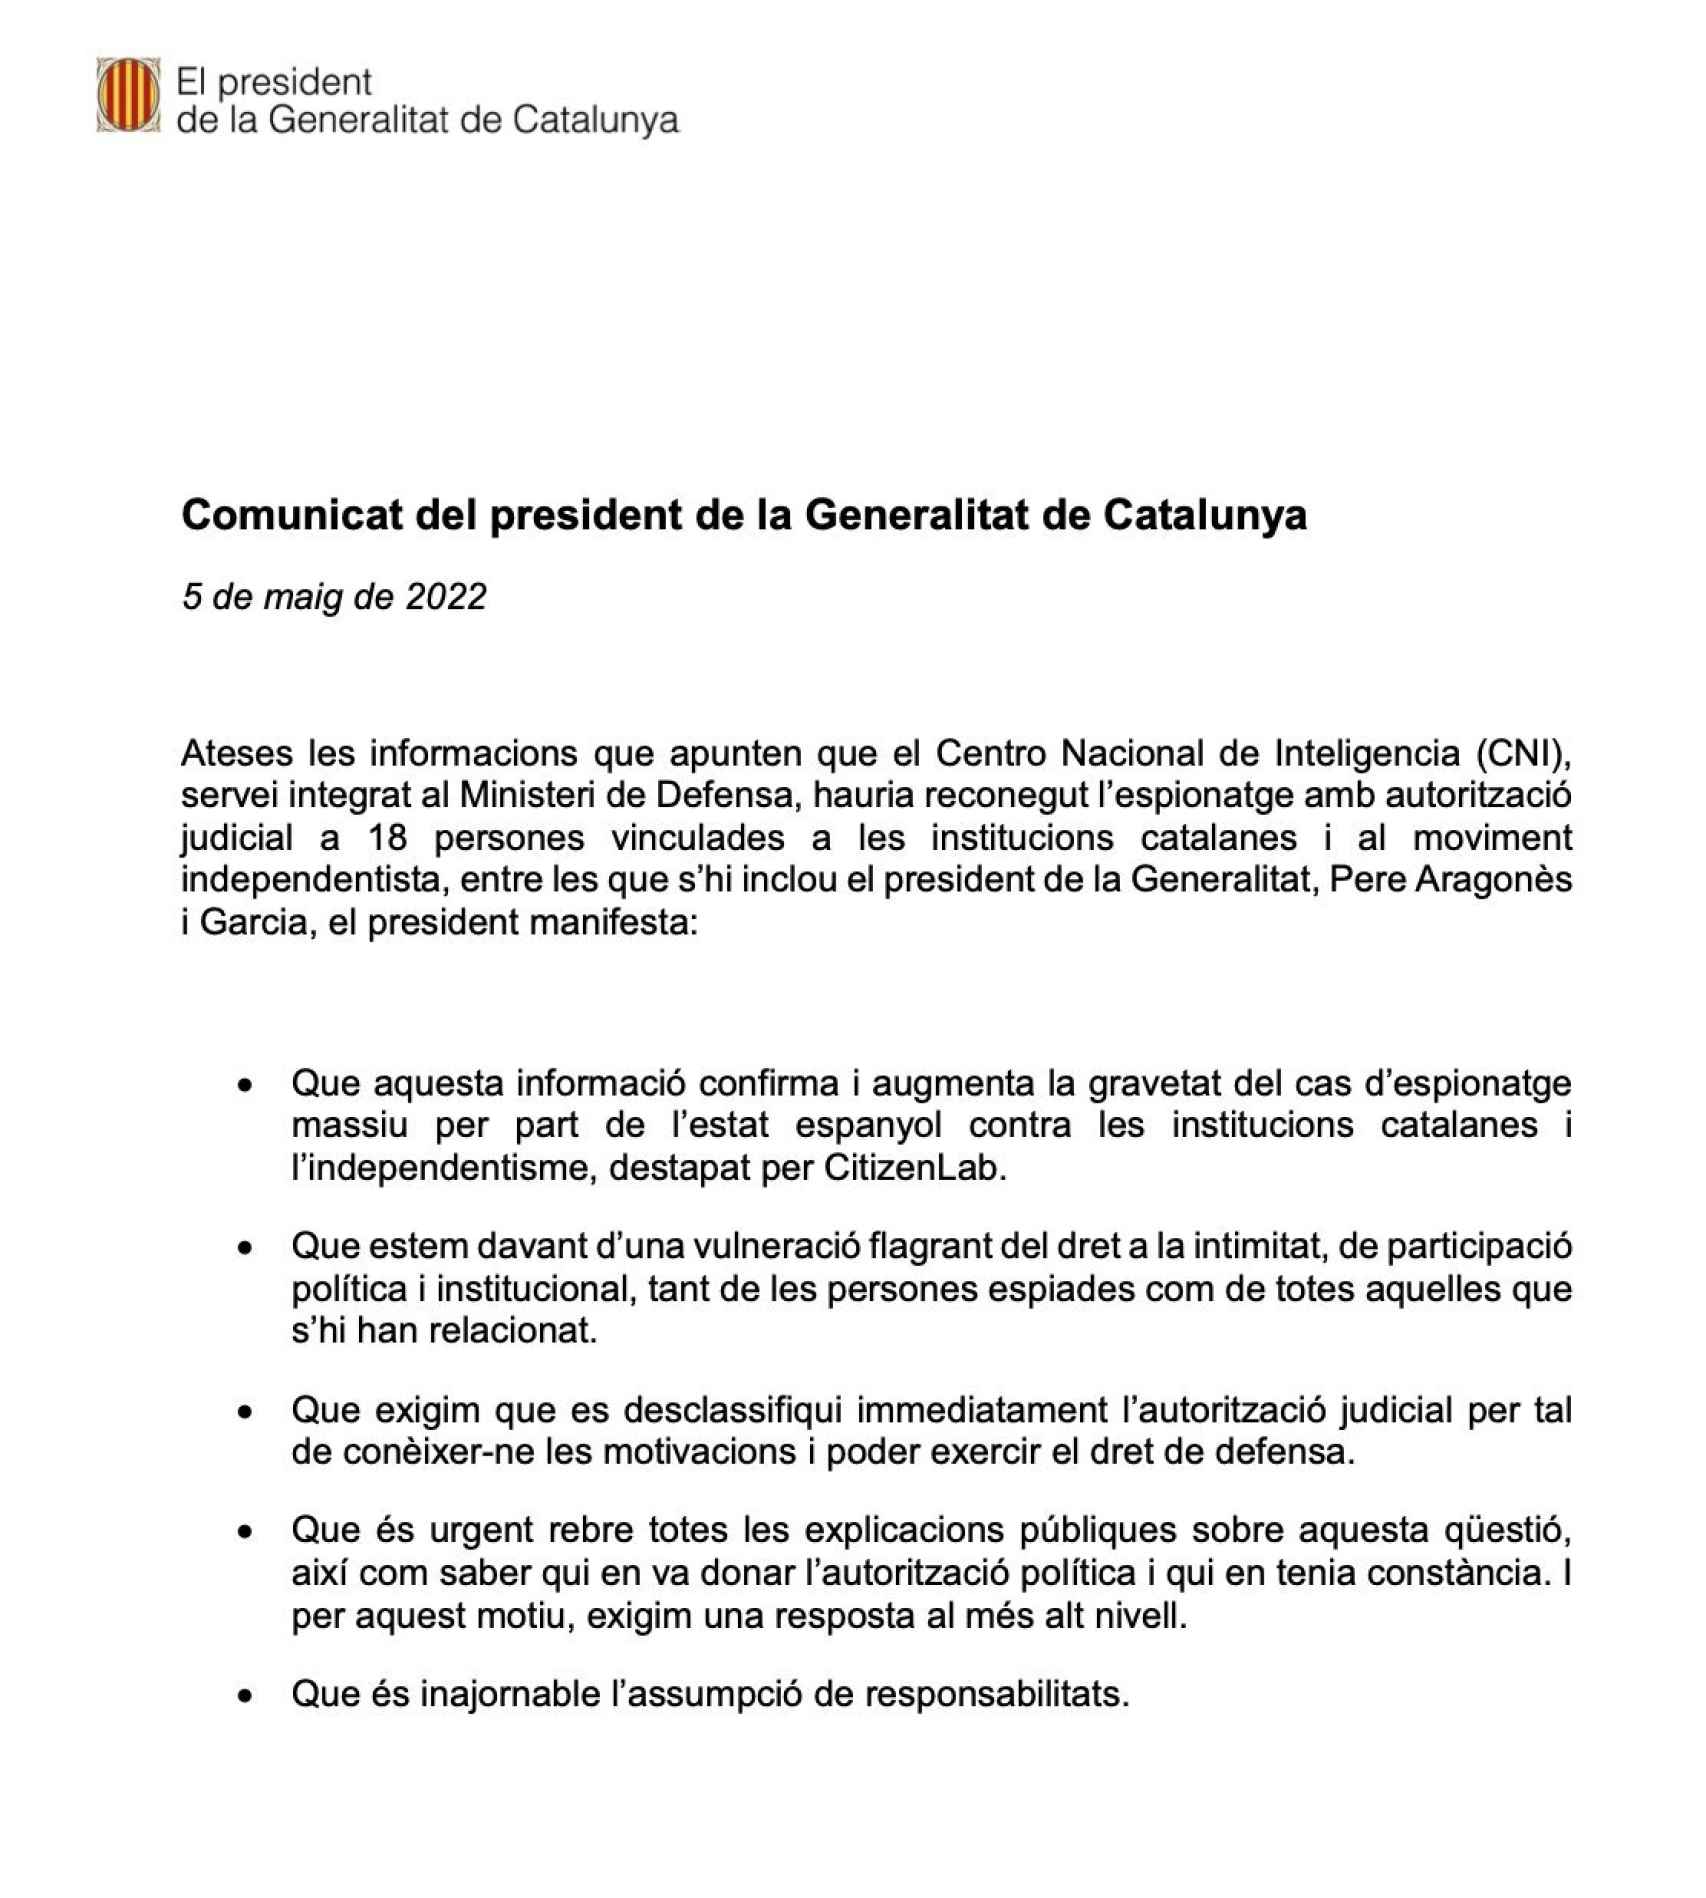 El comunicado oficial difundido esta tarde por el presidente de la Generalitat, Pere Aragonés.